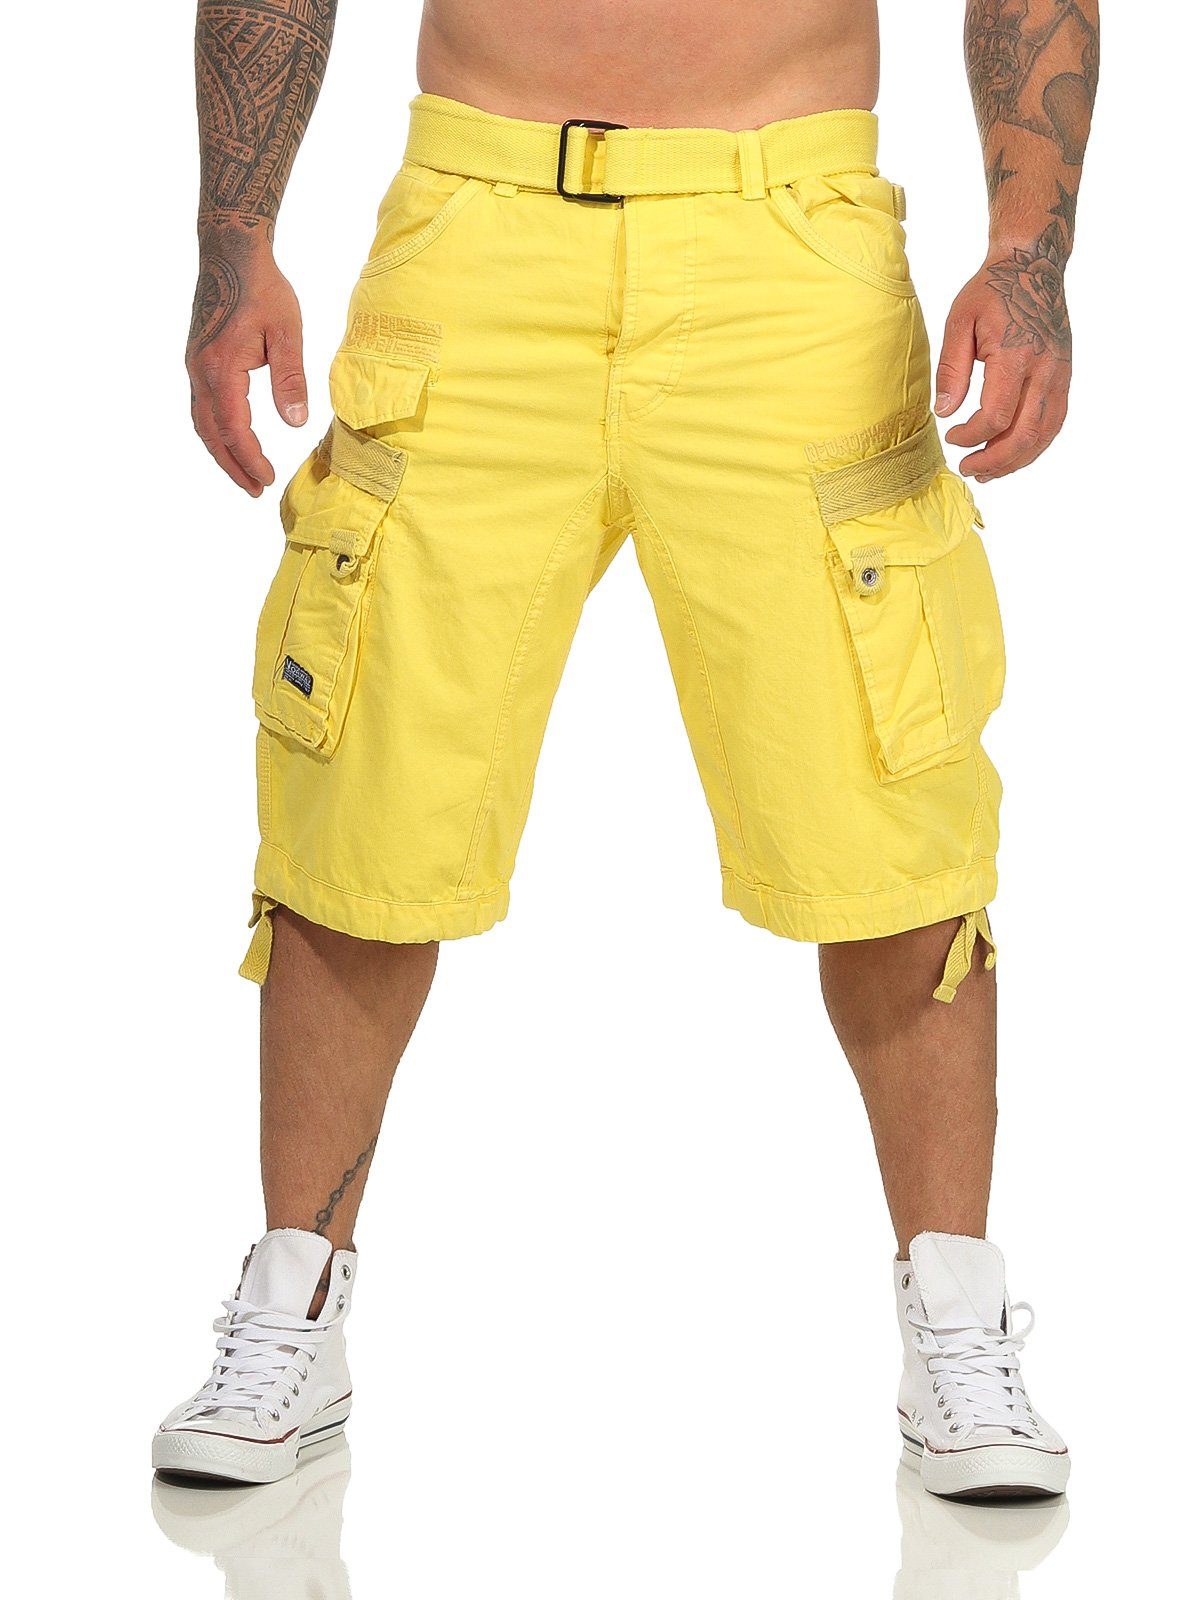 Herren abnehmbarem kurze Norway (mit Shorts, Gürtel) unifarben / Shorts Hose, camouflage Cargoshorts PANORAMIQUE yellow Geographical